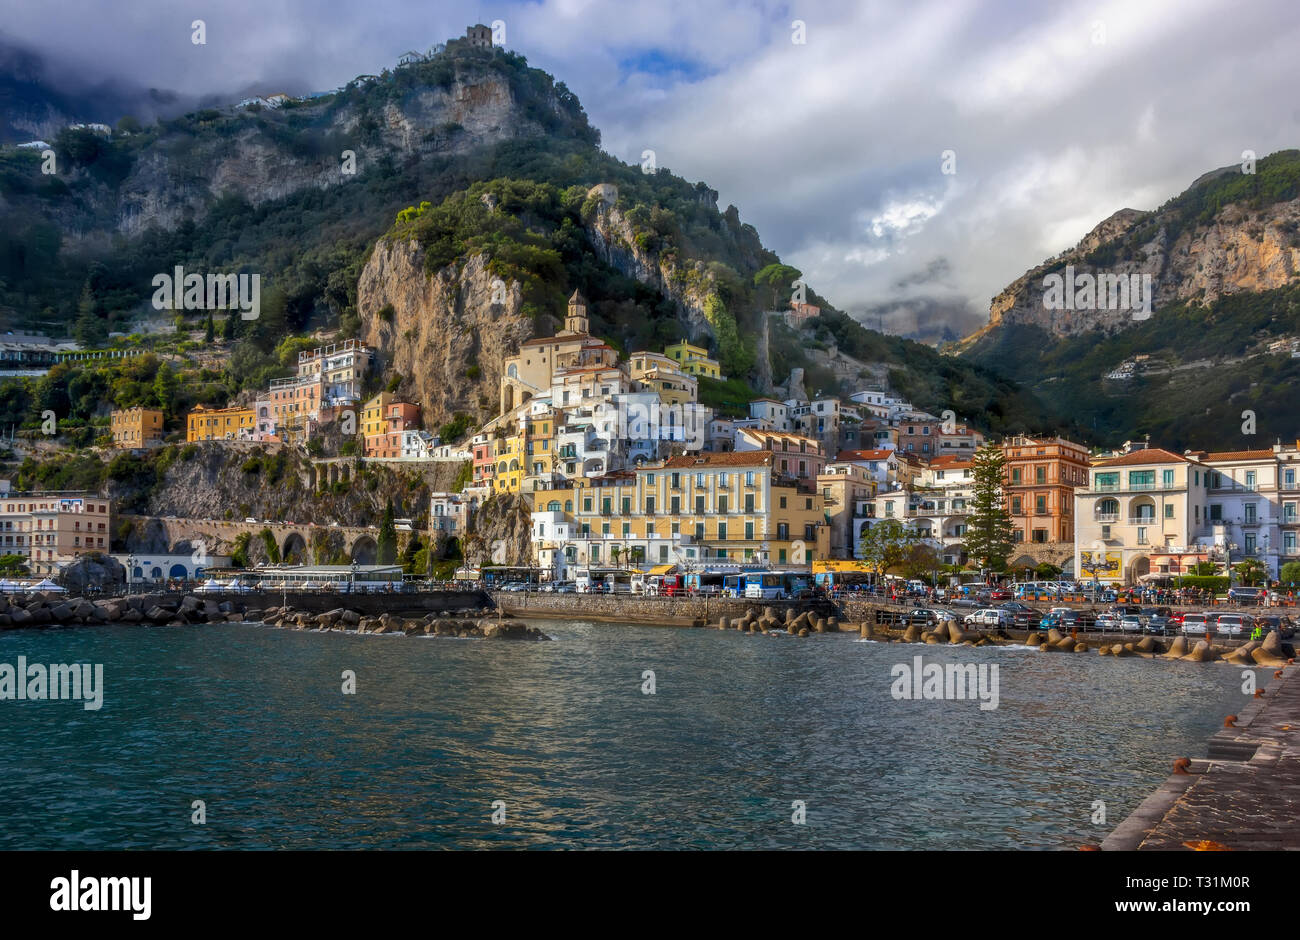 Amalfiküste in Italien. Ich bin mir absolut sicher Amalfi ist die schönste Stadt von Neapel. Ich war im Oktober 2018. Yeo, bunte Häuser lande Stockfoto